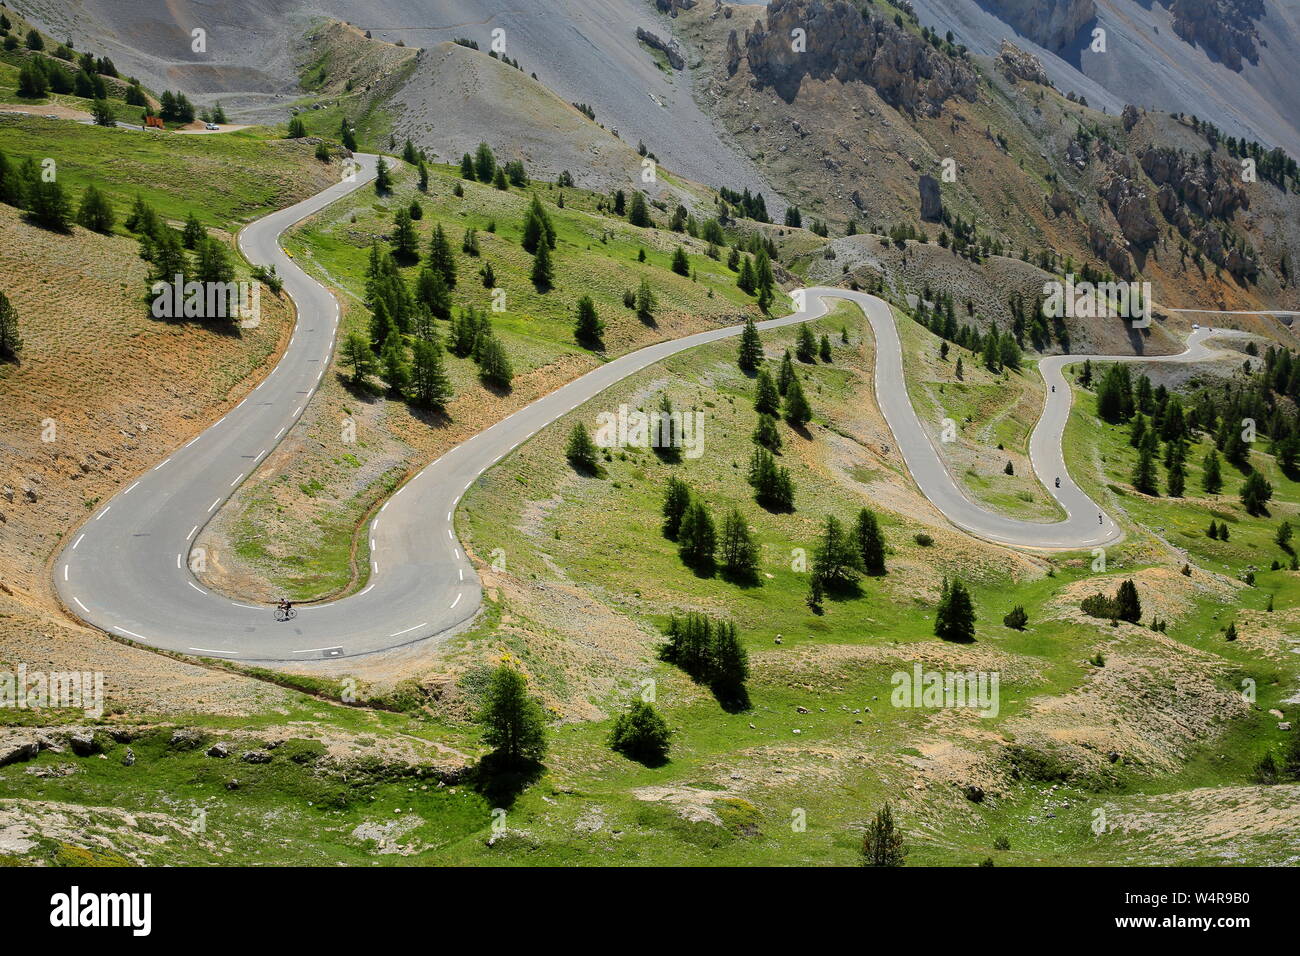 Il lato meridionale di Izoard pass con la strada tortuosa (famosa per i ciclisti), Queyras Parco Naturale Regionale, Alpi del Sud, Francia, Europa Foto Stock